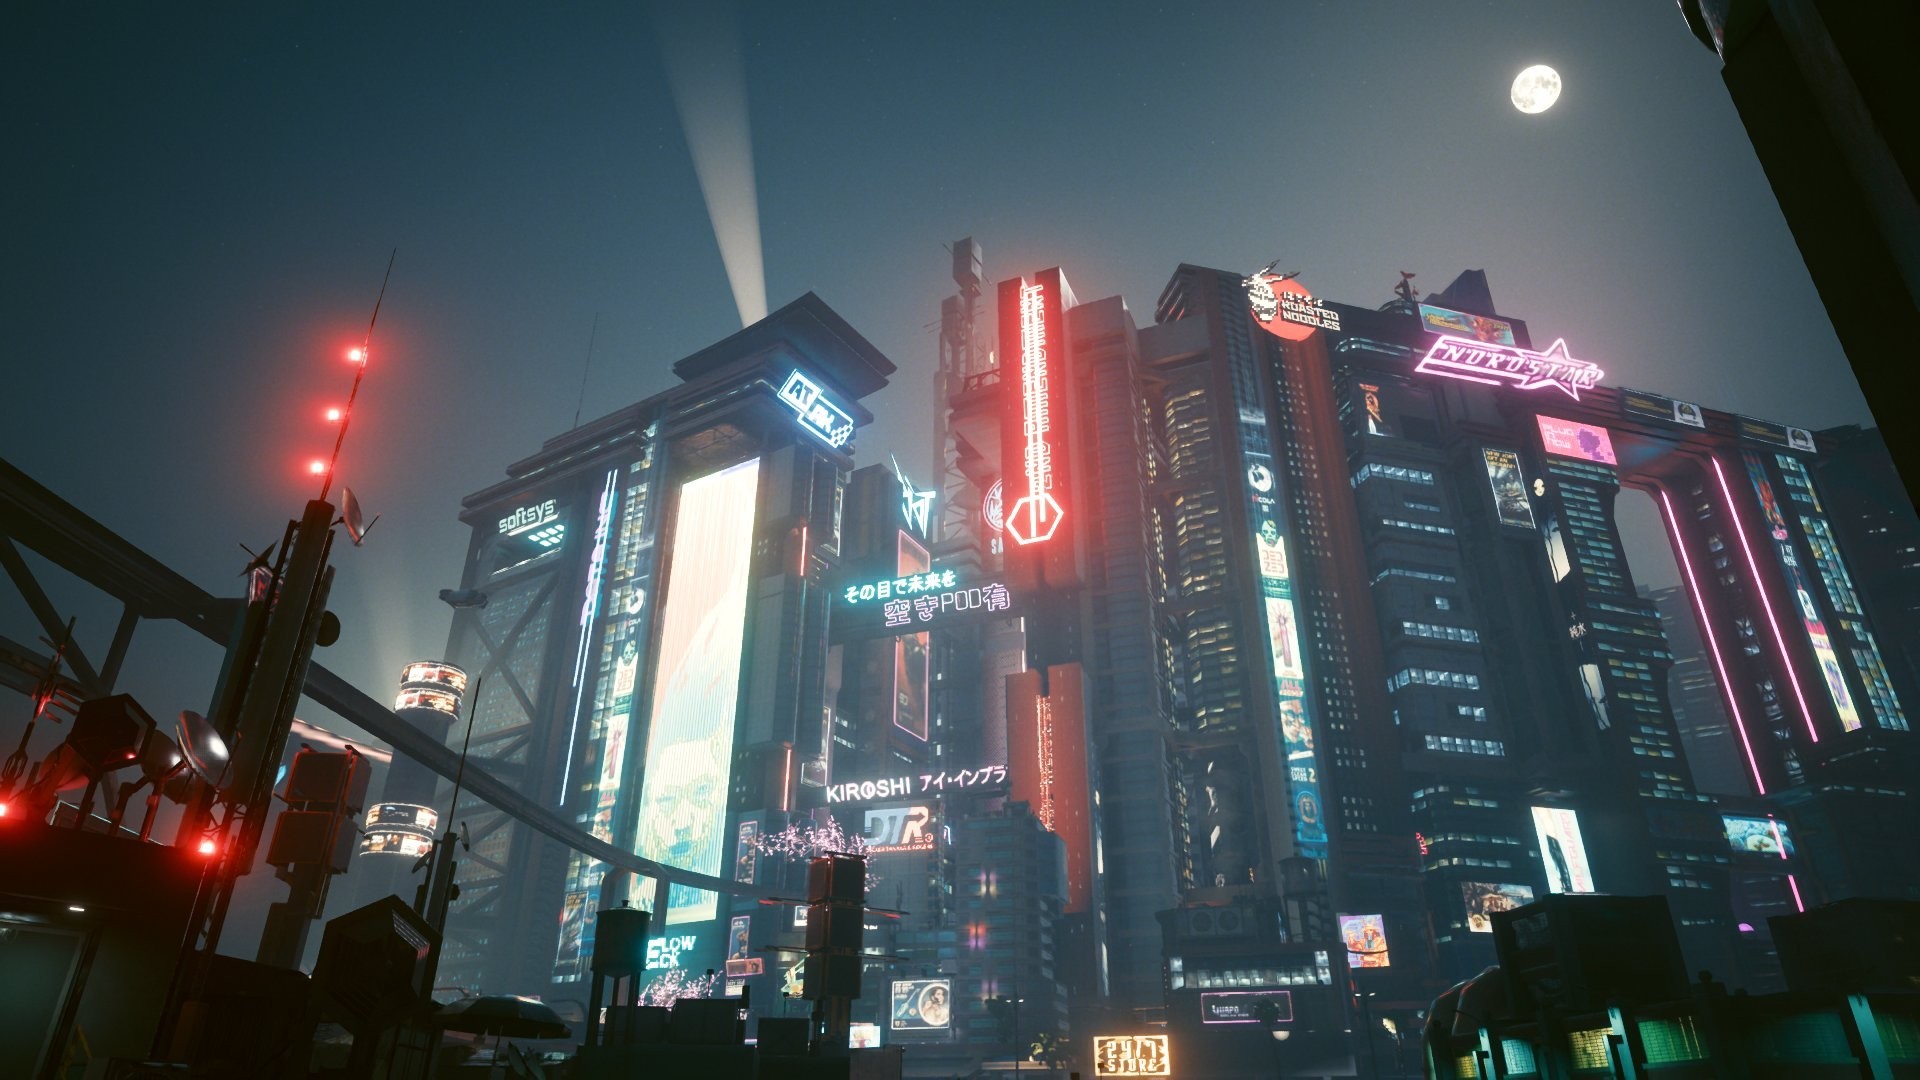 【PC游戏】夜之城好美!玩家分享《赛博2077》画质全部拉满的截图-第1张